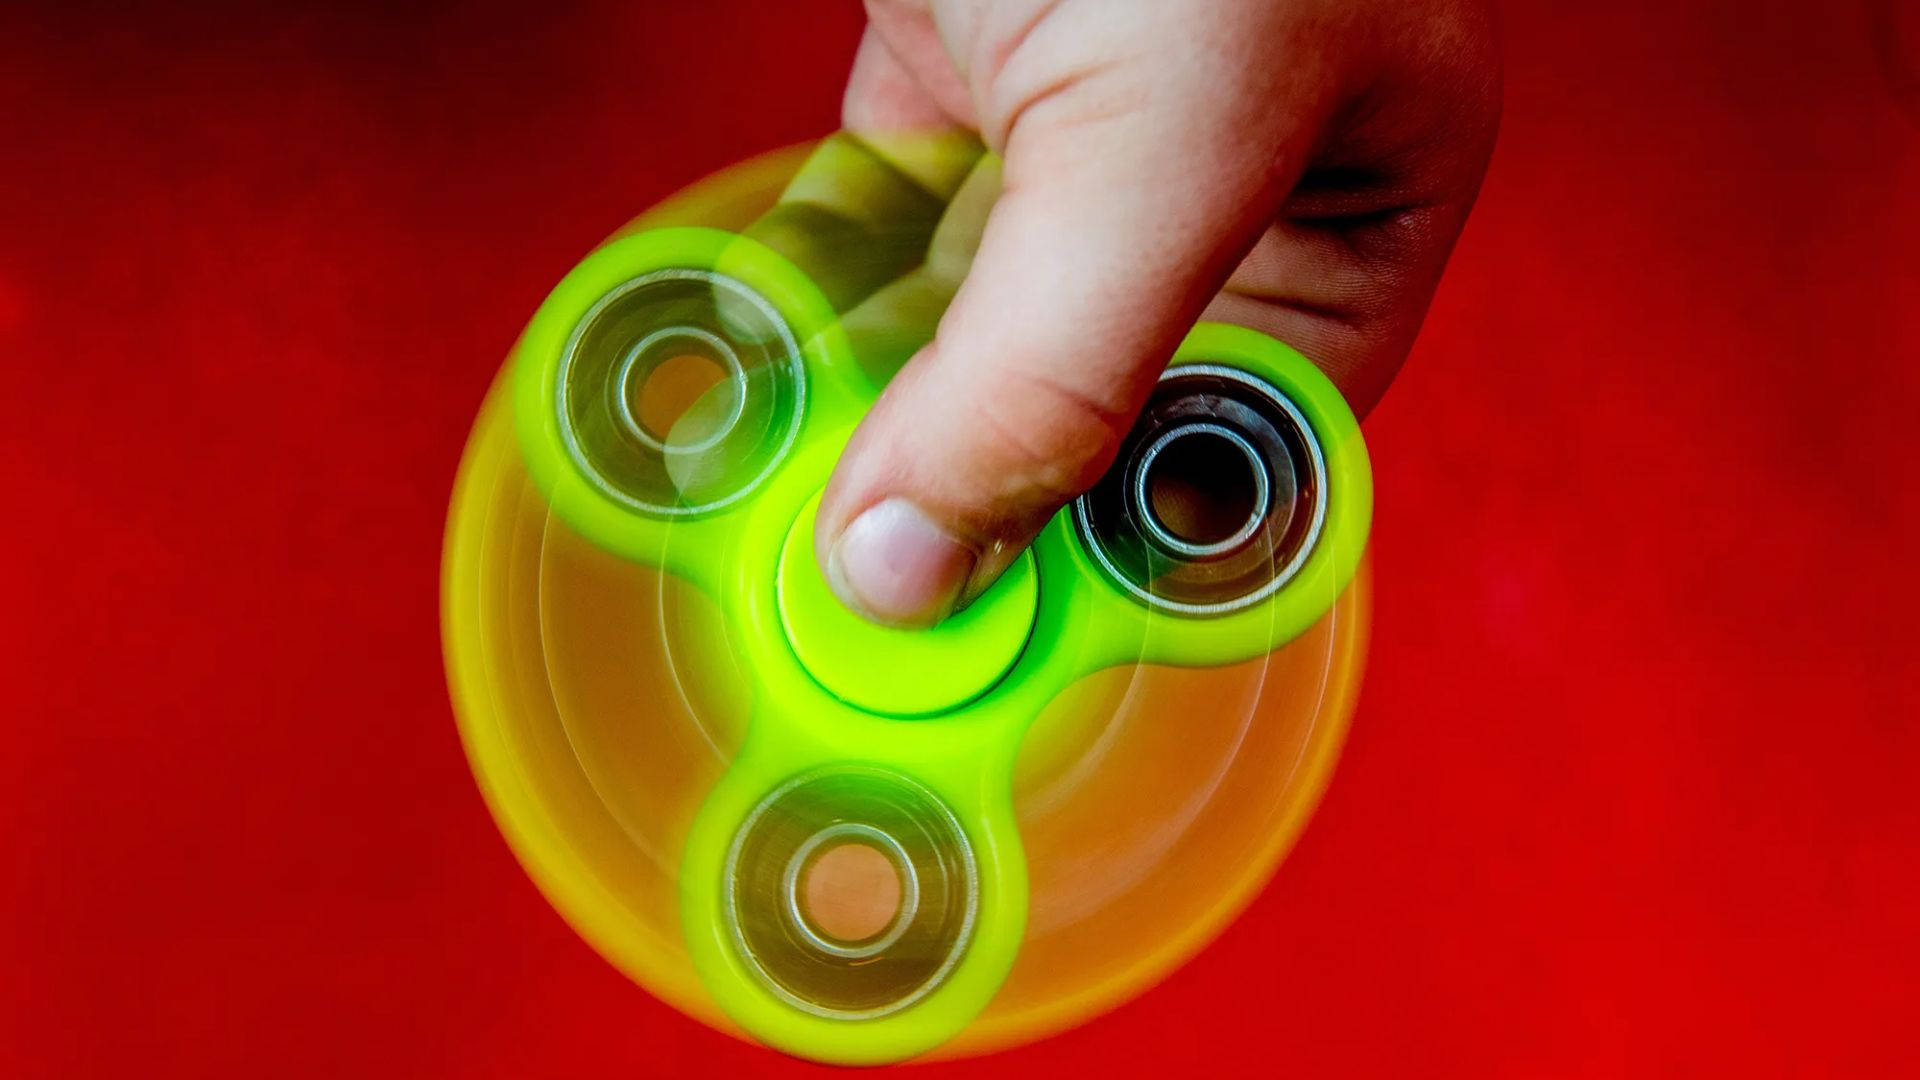 Spinning Neon Fidget Toy Background